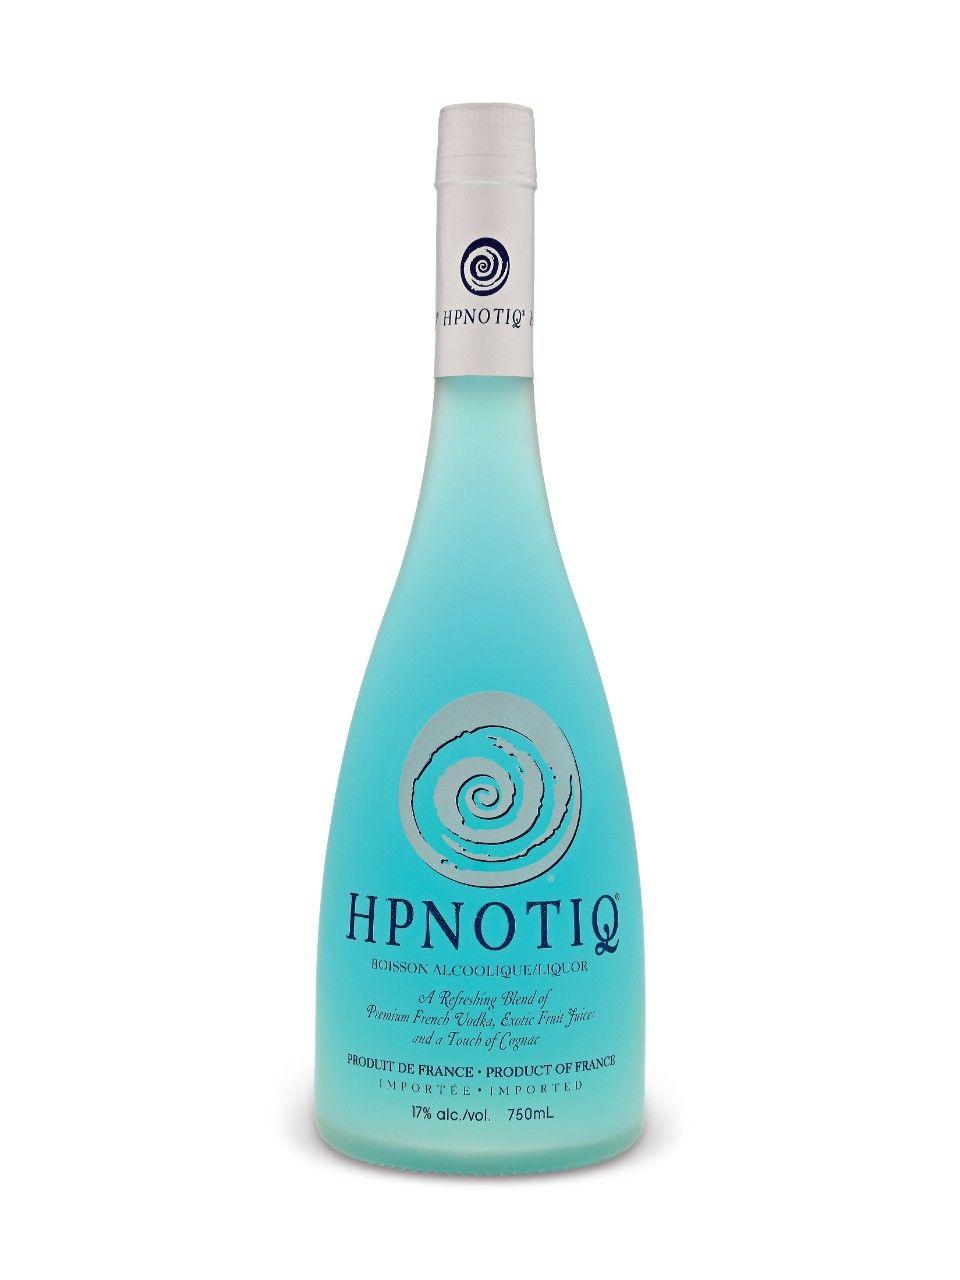 Hpnotiq Logo - Hpnotiq Liquor